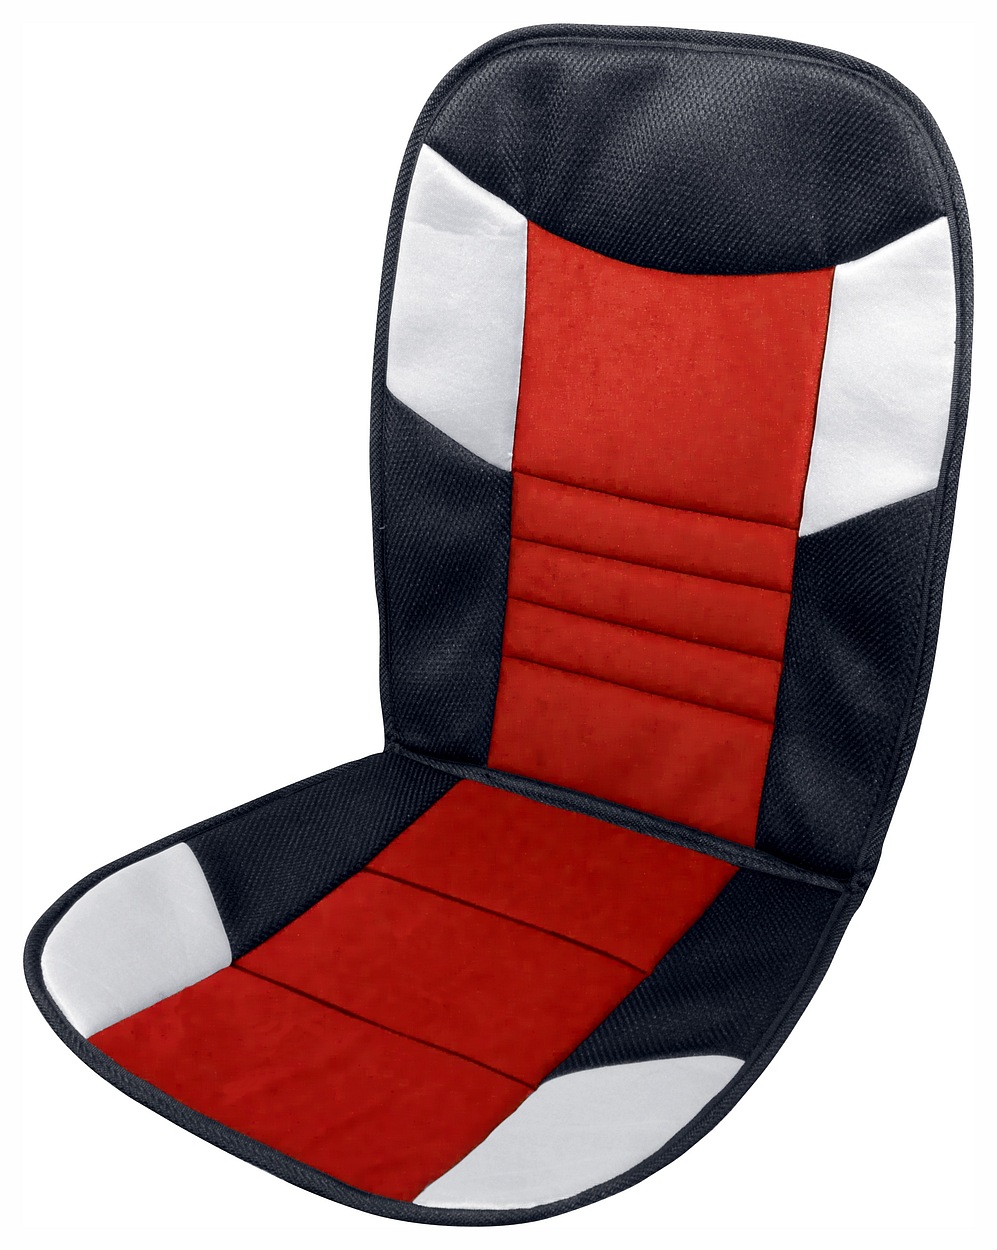 Fotografie Potah sedadla Tetris - 46 x 102 cm, černo/červený